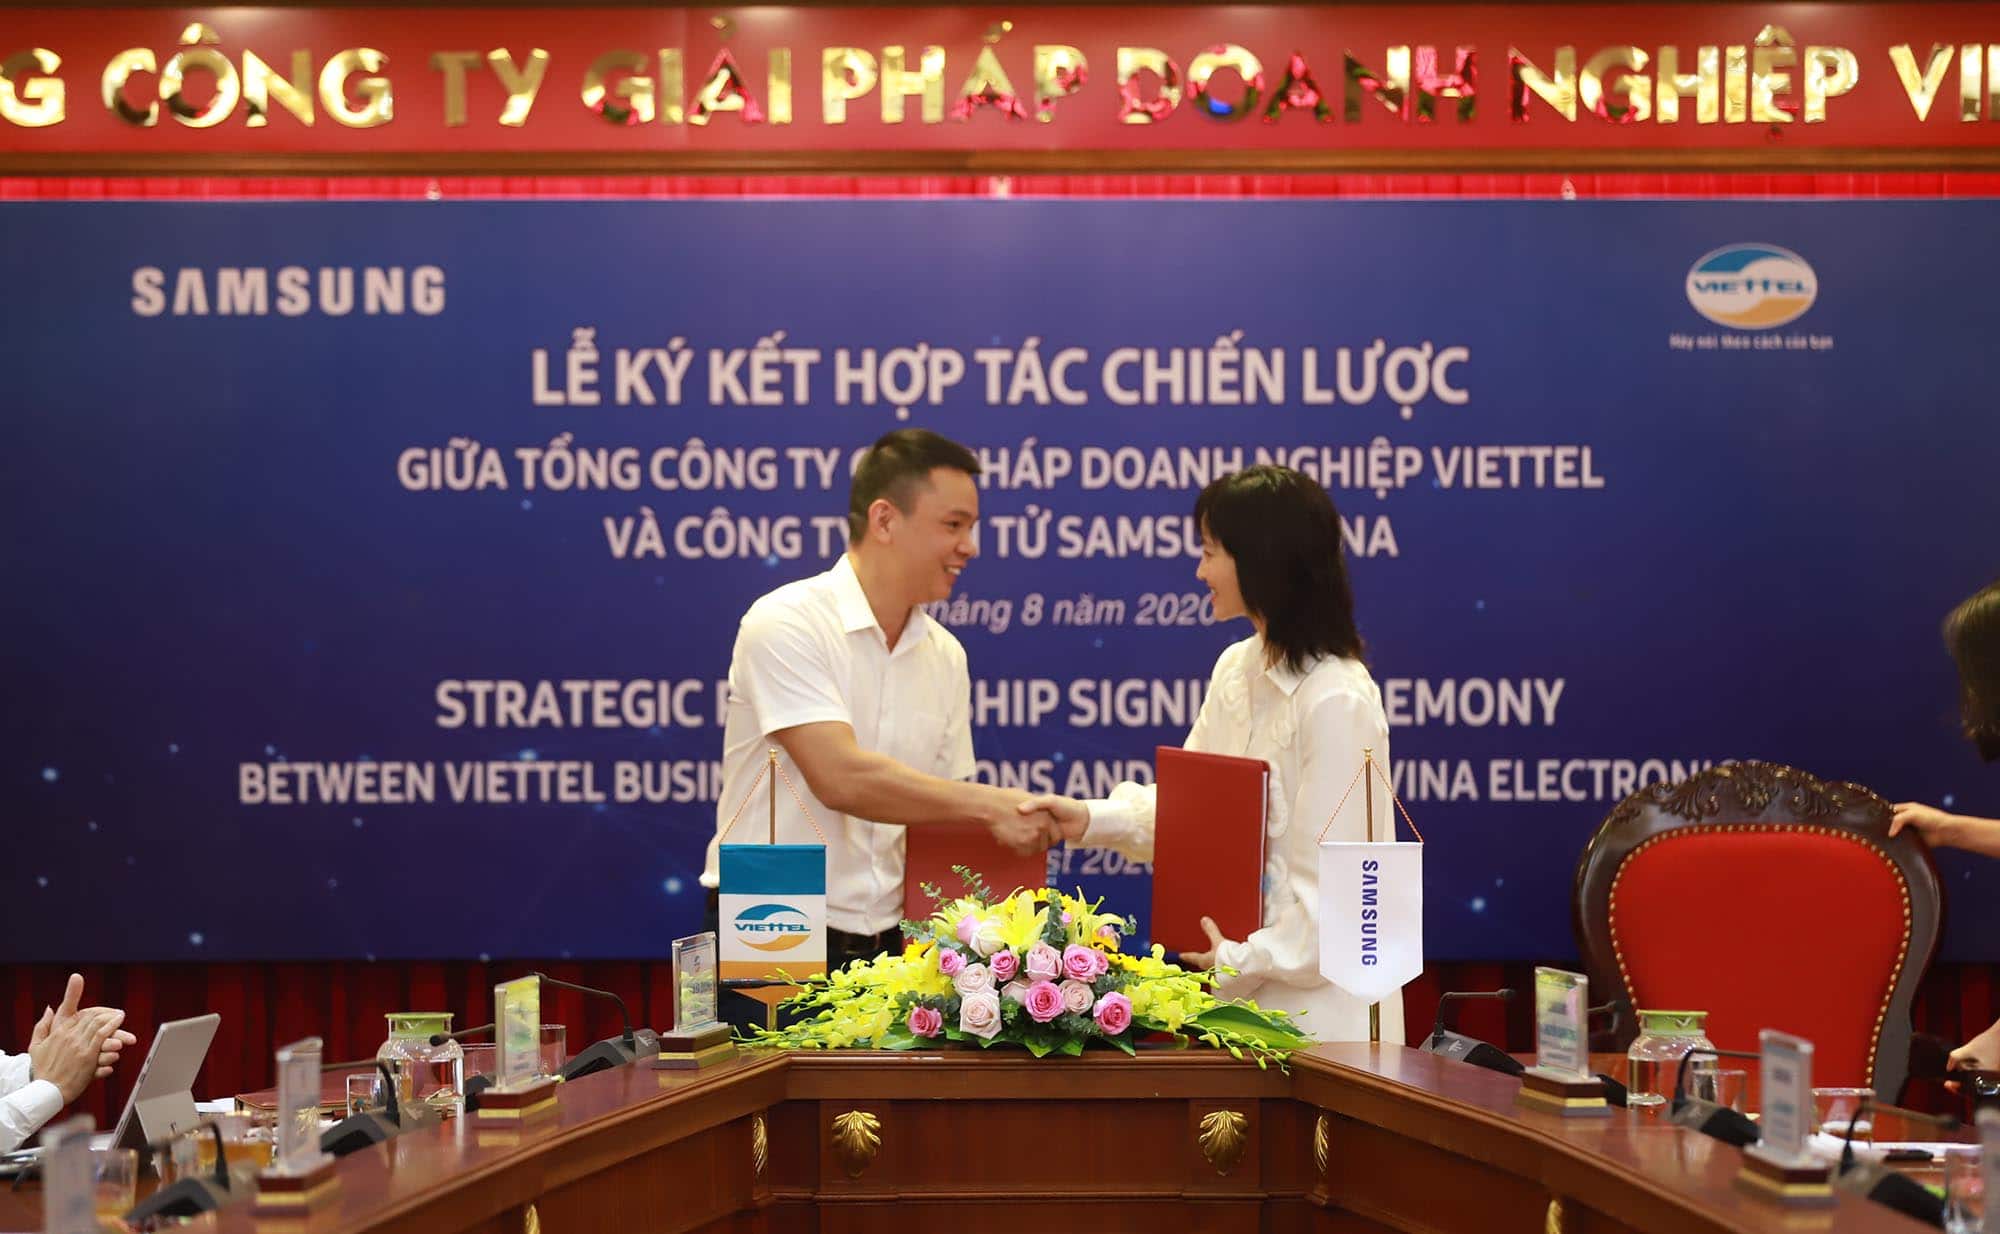 Tổng Công ty Giải pháp Doanh nghiệp Viettel và Samsung chính thức ký kết hợp tác chiến lược